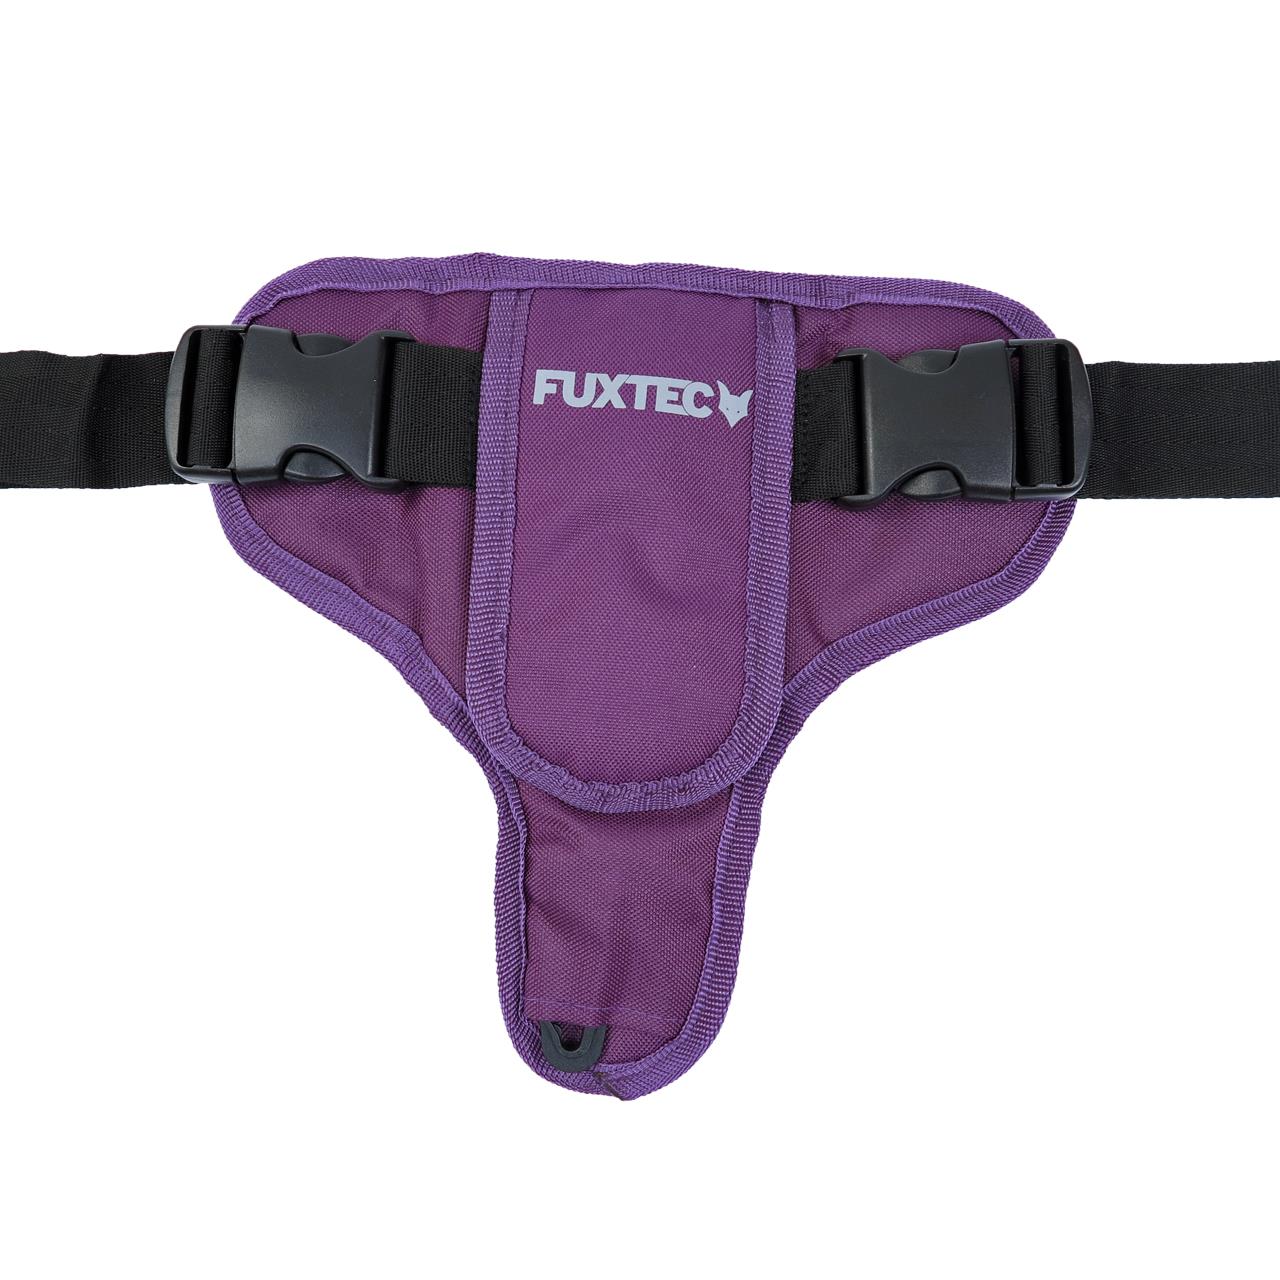 FUXTEC - Ceinture de sécurité violet chariot  Wild, City, Easy, Smart et Premium Cruiser